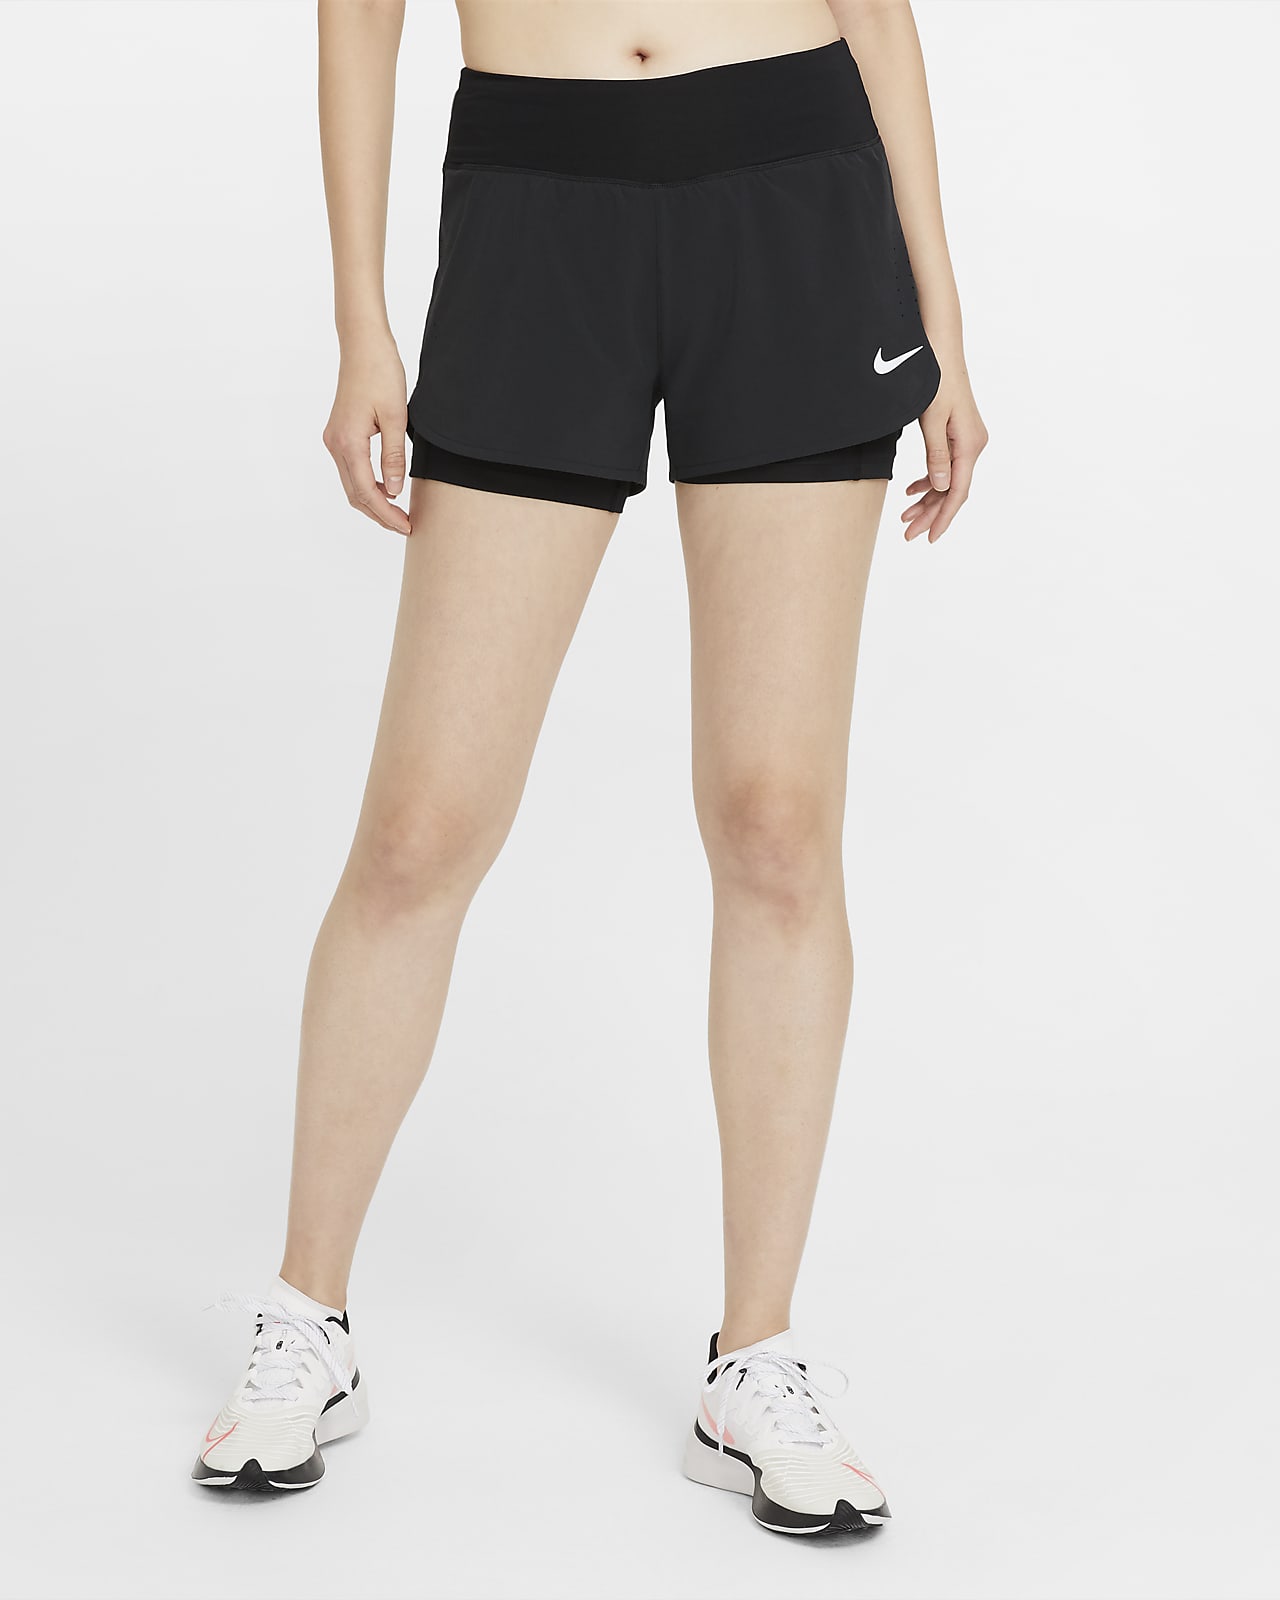 Löparshorts Nike Eclipse 2-i-1 för kvinnor